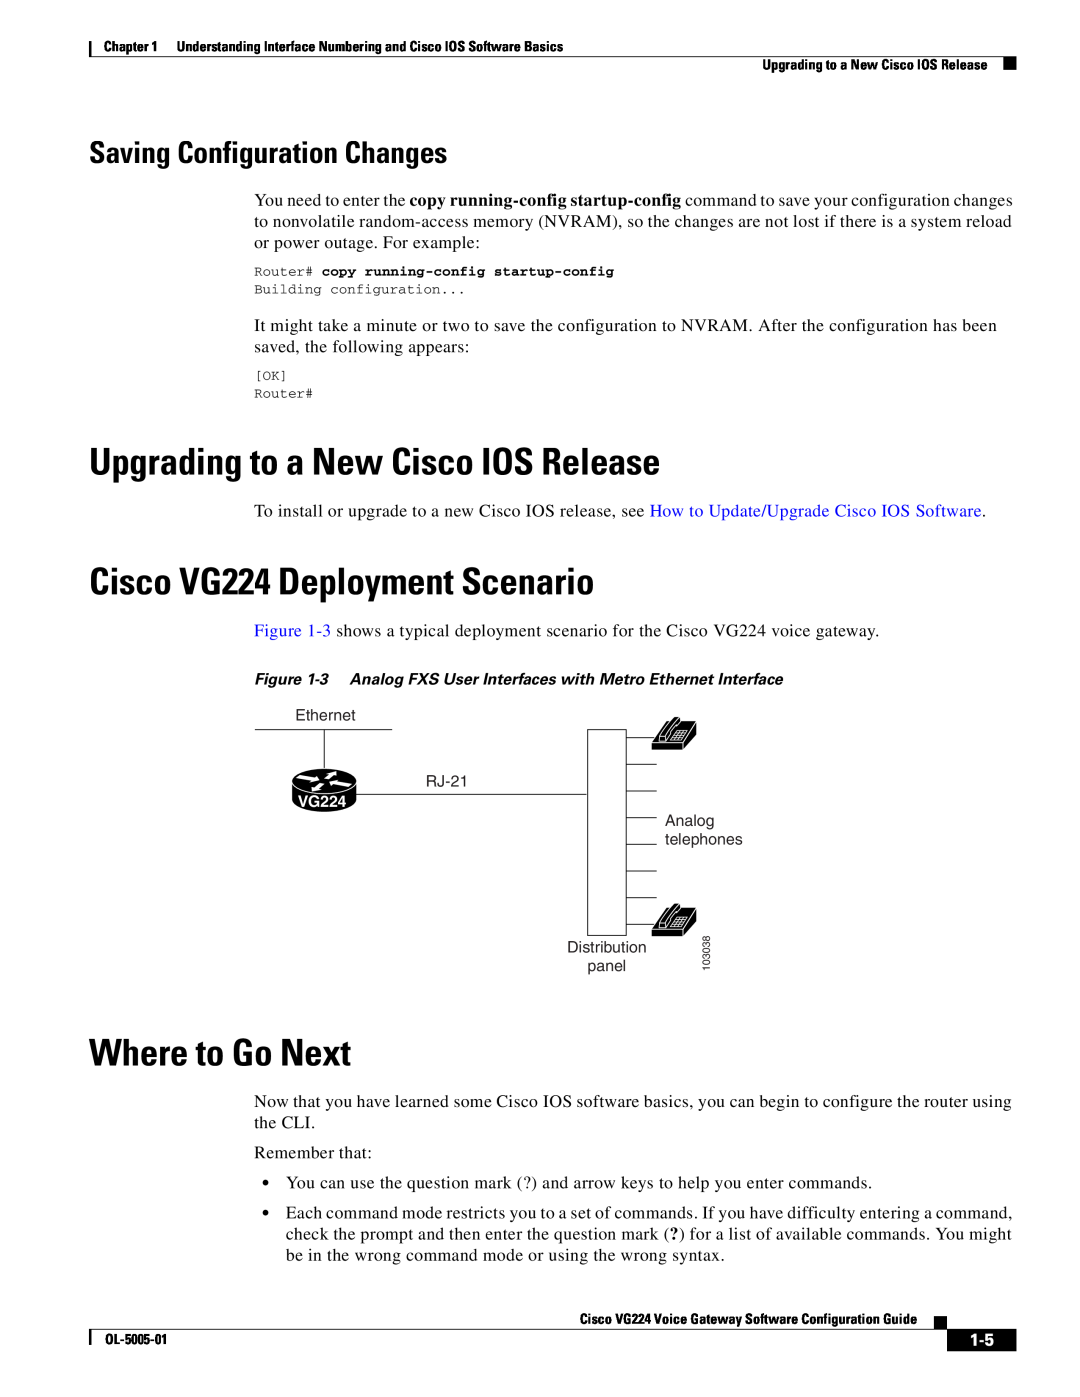 Cisco Systems manual Upgrading to a New Cisco IOS Release, Cisco VG224 Deployment Scenario, Where to Go Next 